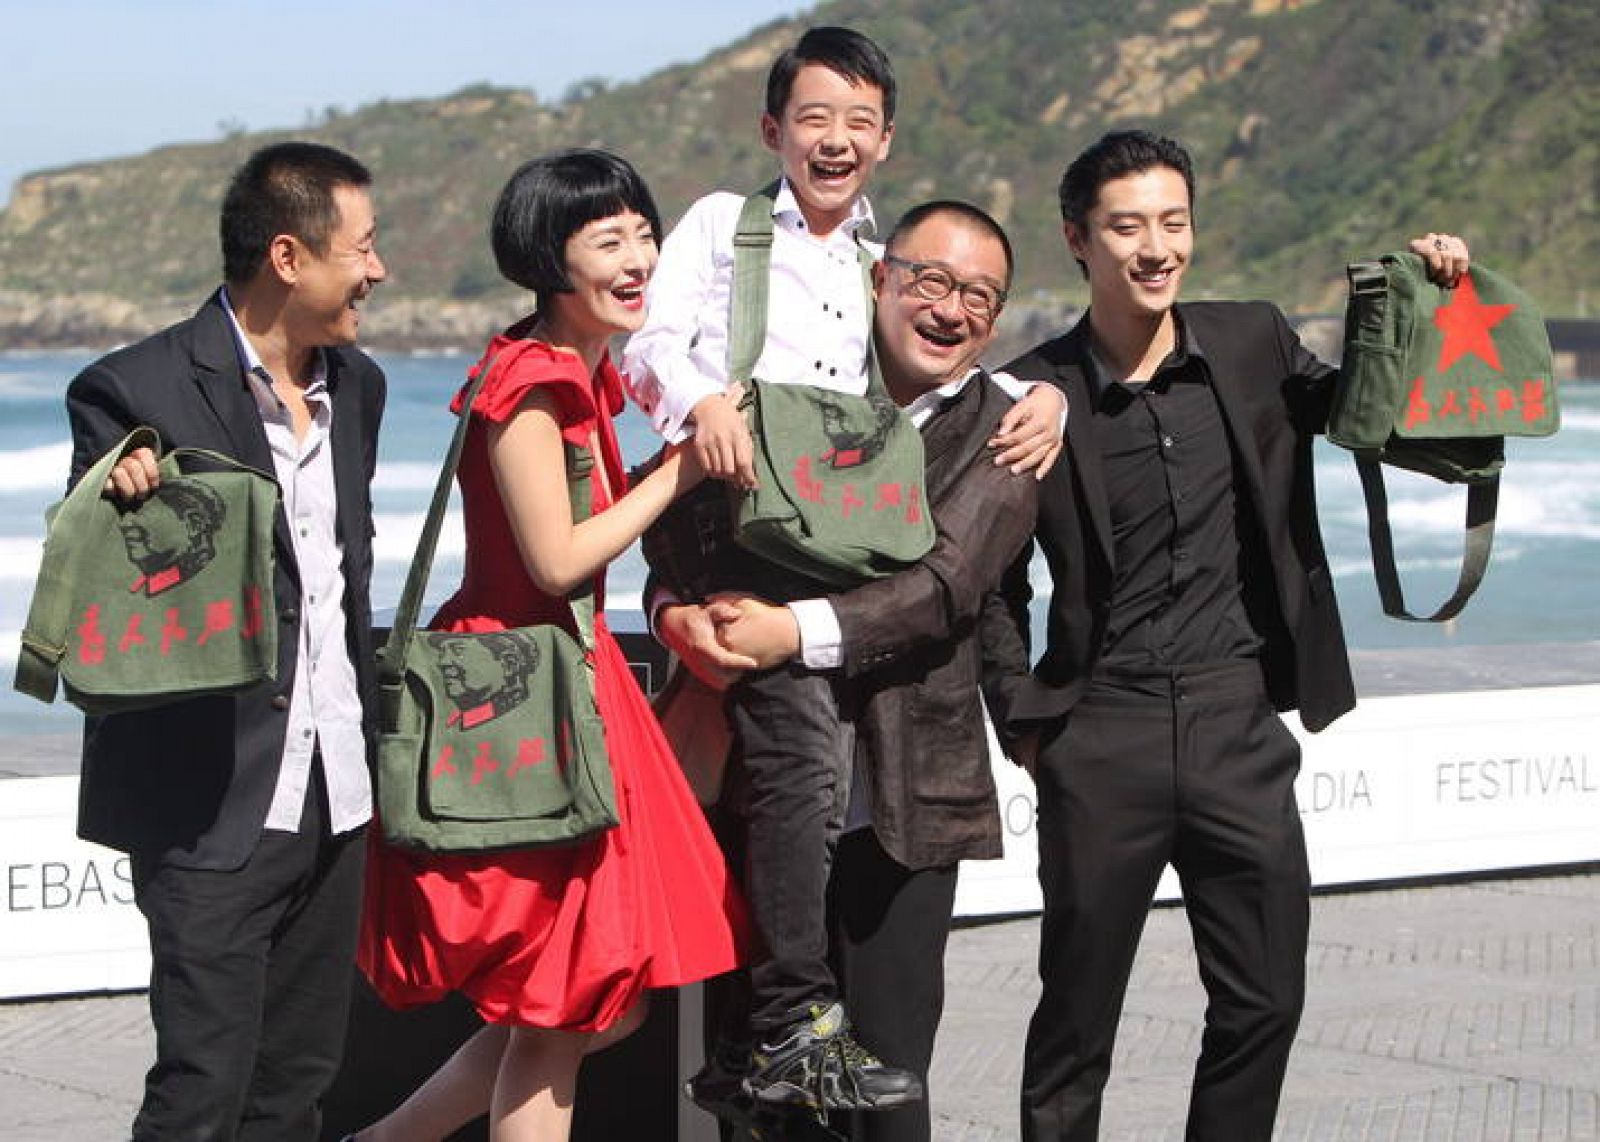 El realizador Wang Xiao Shuai, en el centro sosteniendo al niño, y los actores de "11 Flowers".